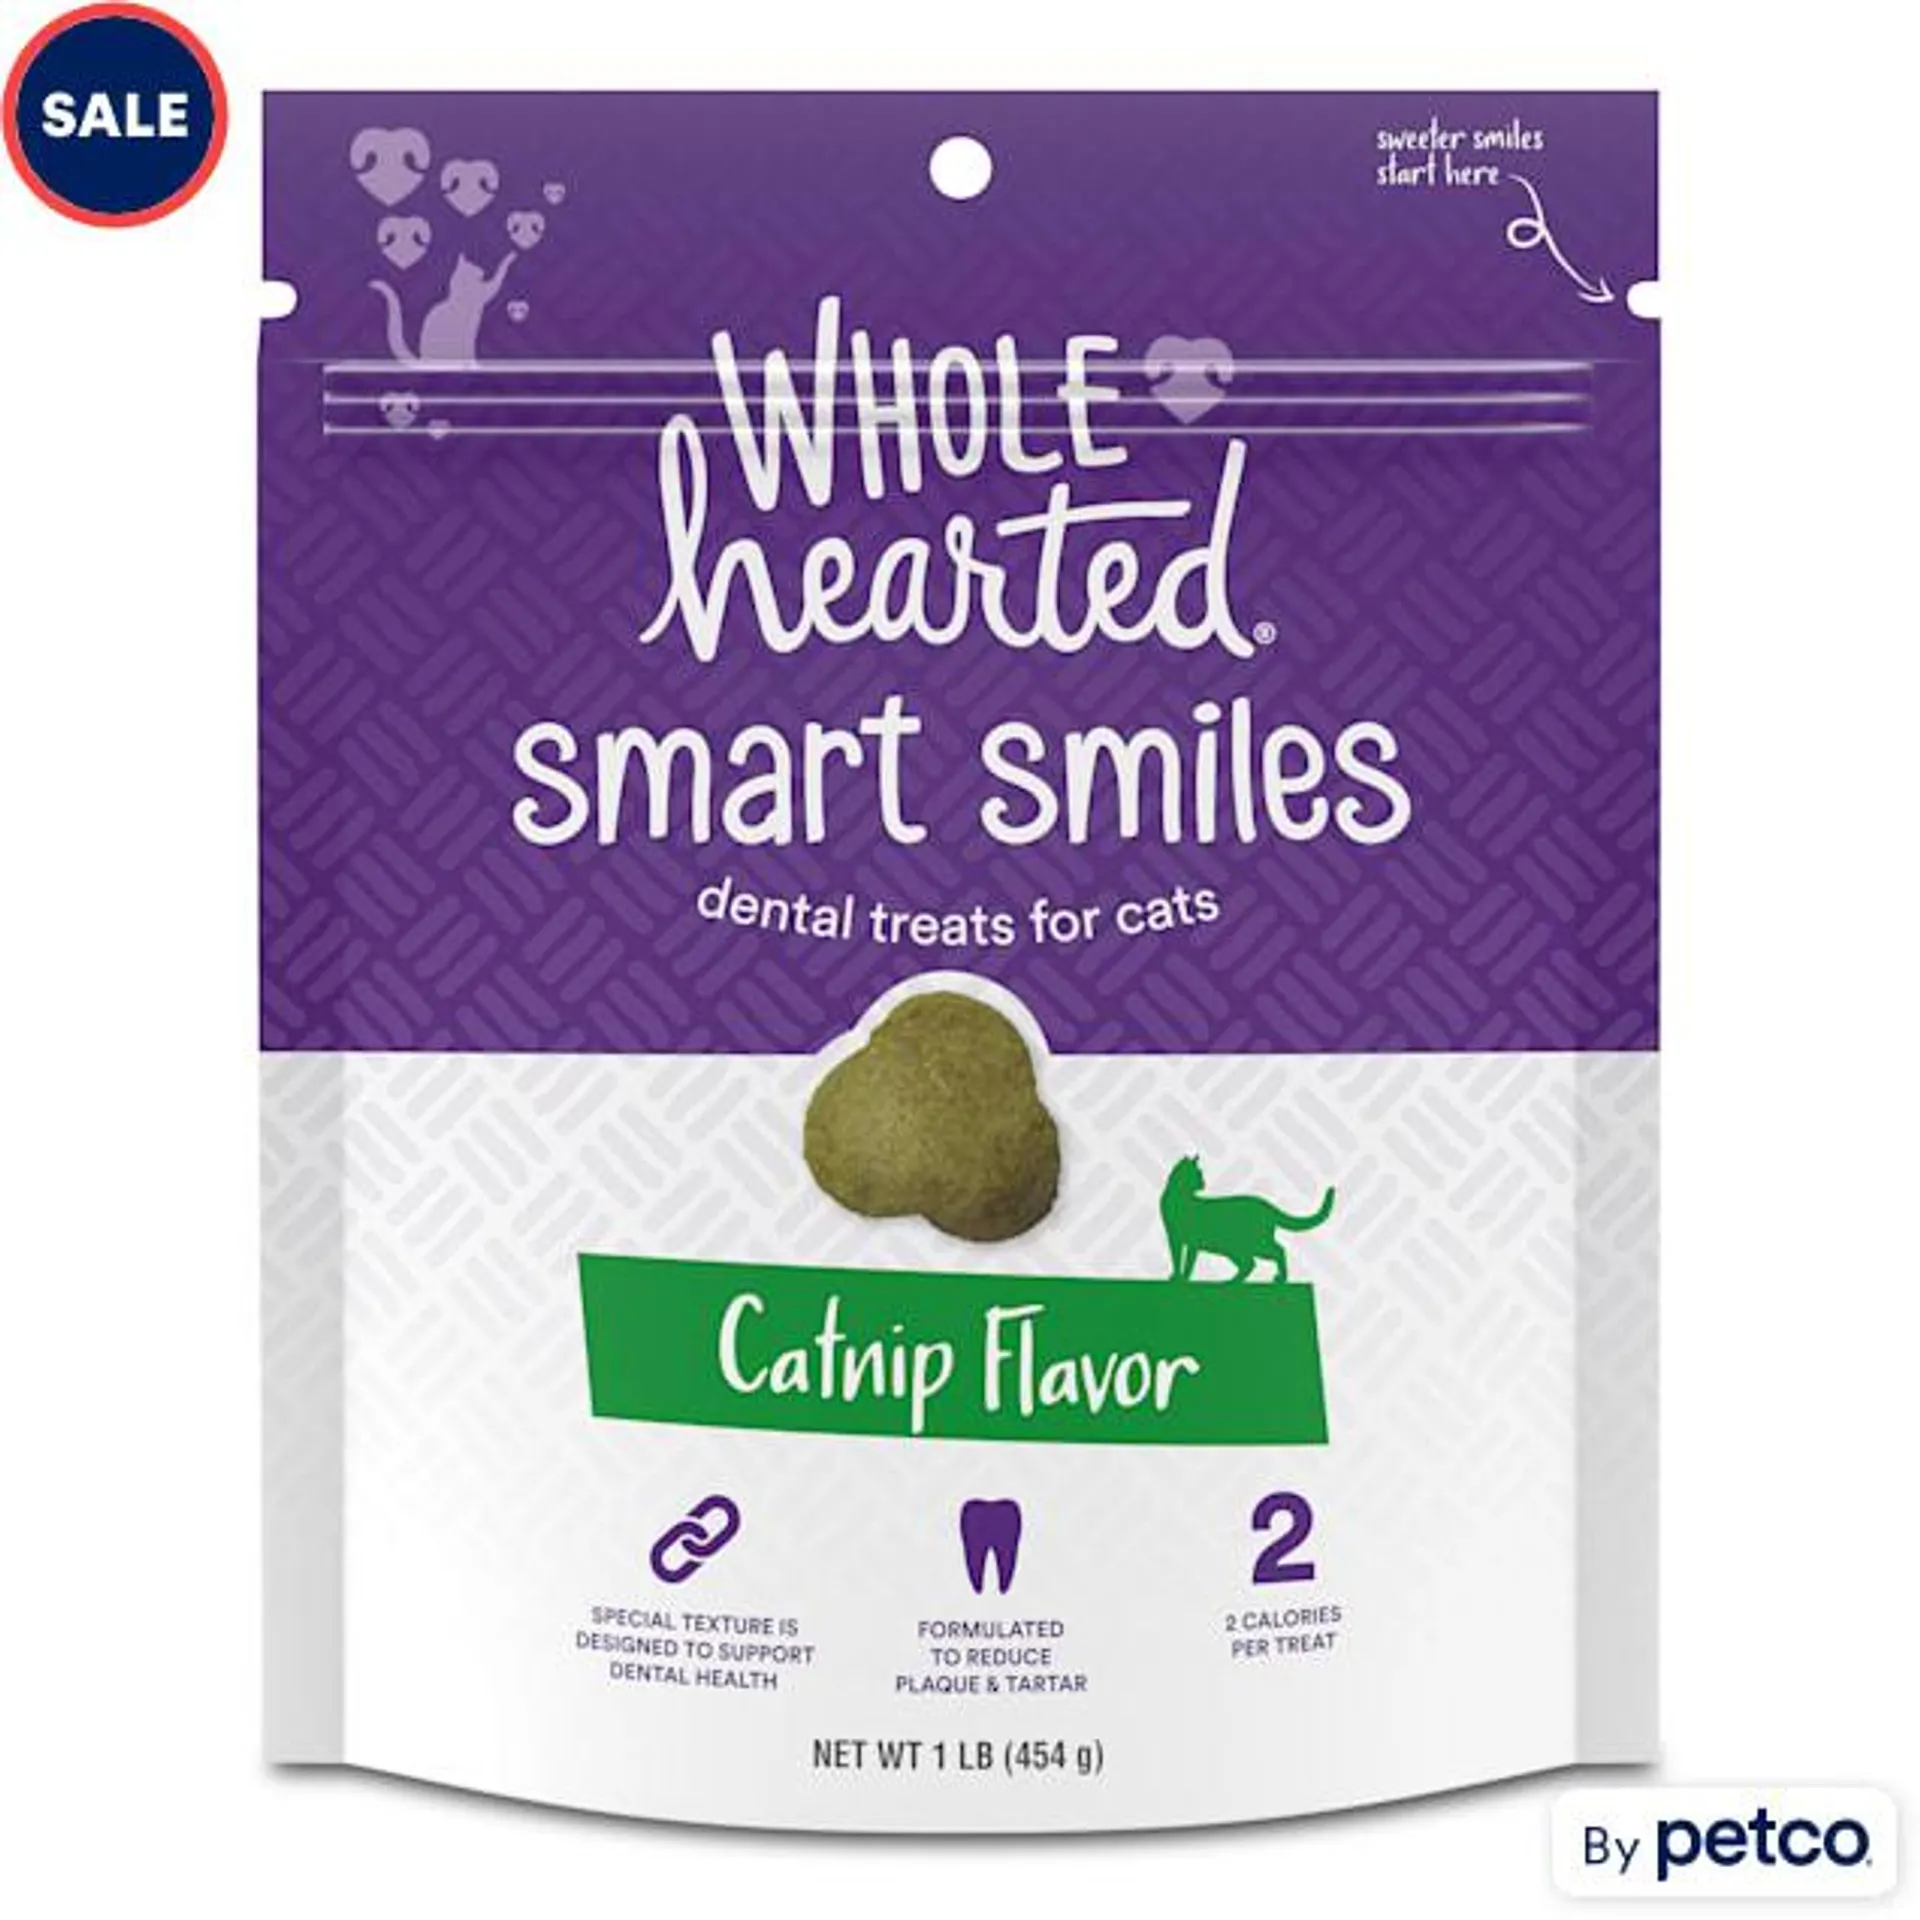 WholeHearted Catnip Flavor Cat Dental Treats, 16 oz.